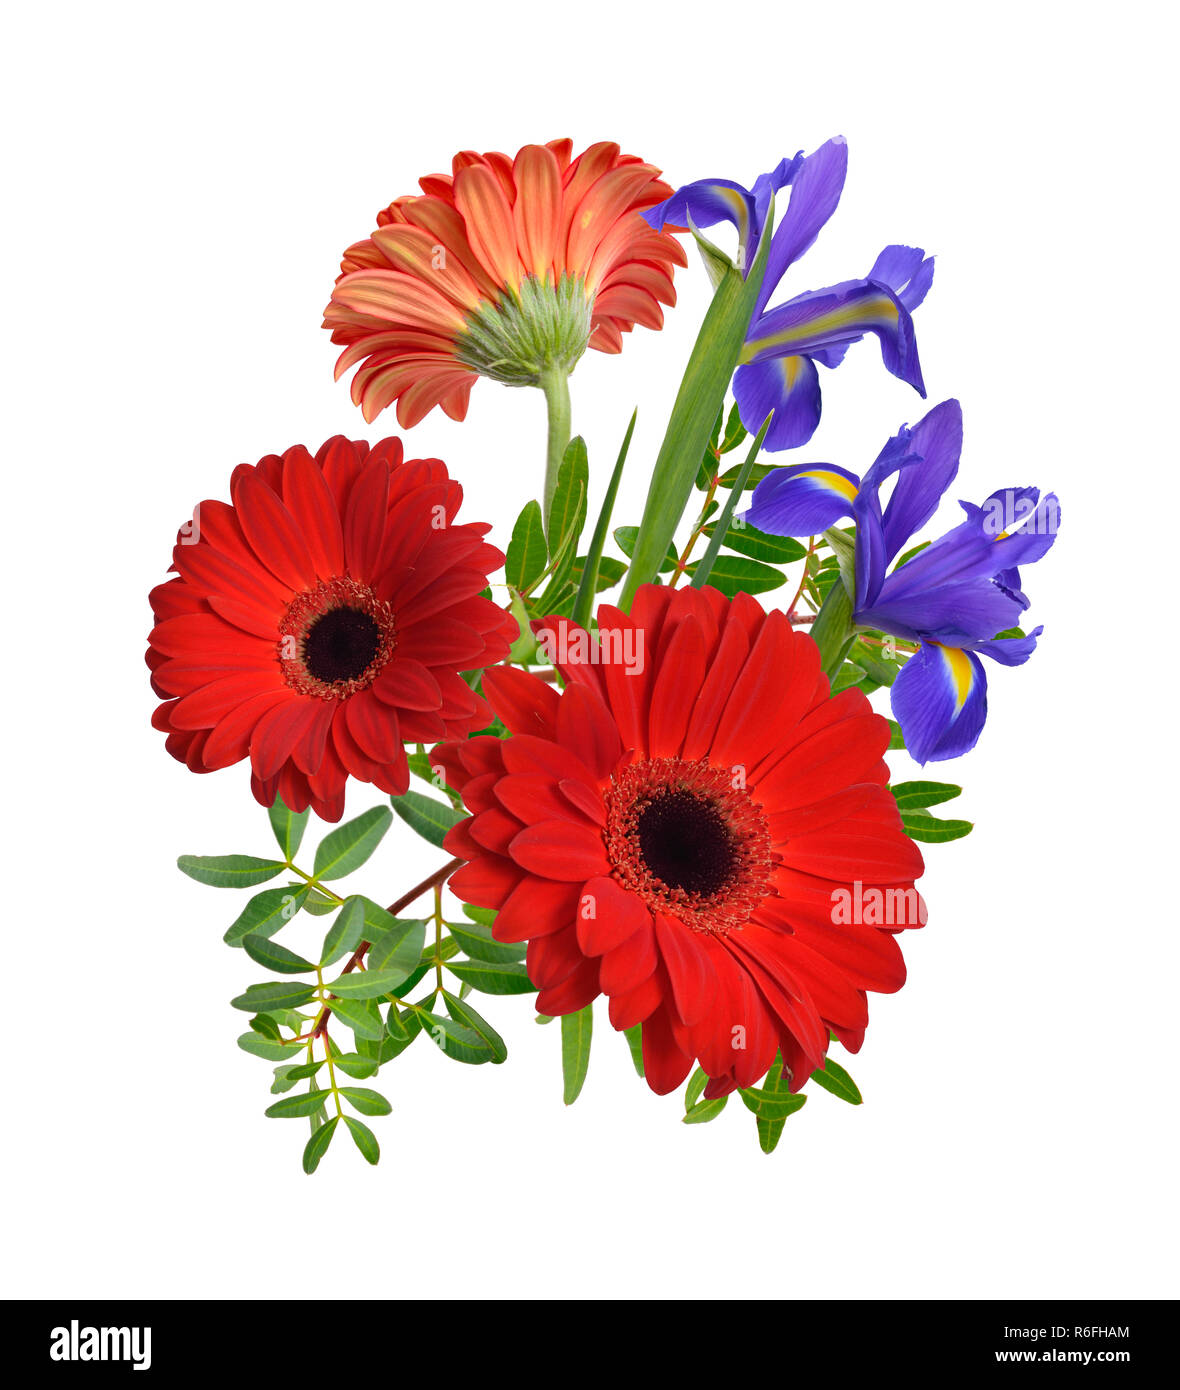 Zusammensetzung mit roten Gerbera und Iris Blumen. Isoliert. Stockfoto